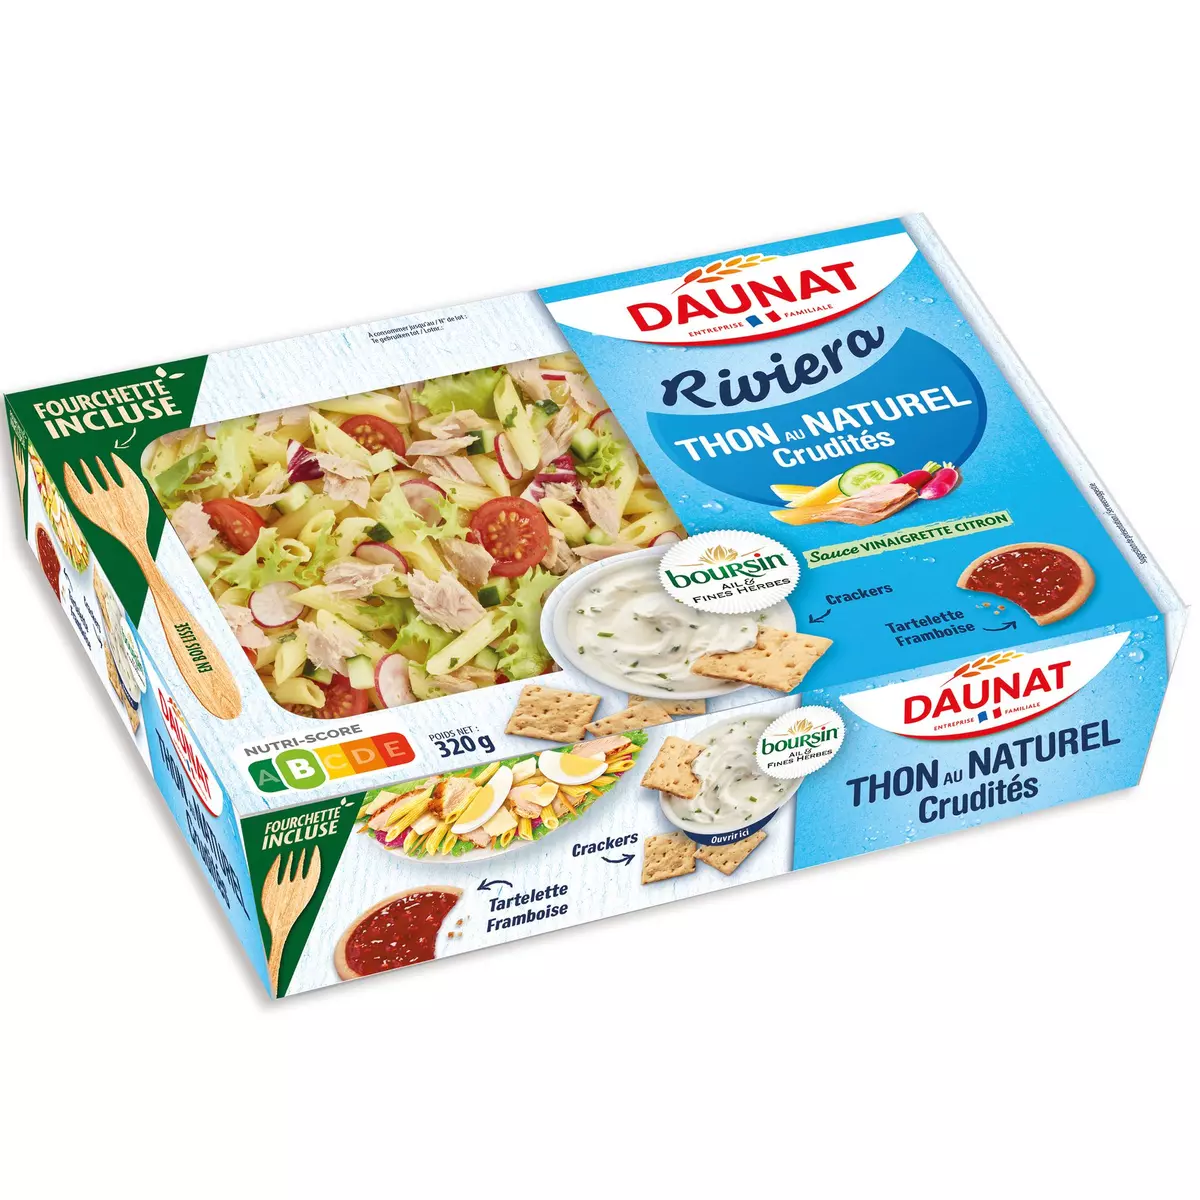 DAUNAT Riviera salade thon naturel crudités 1 portion 320g